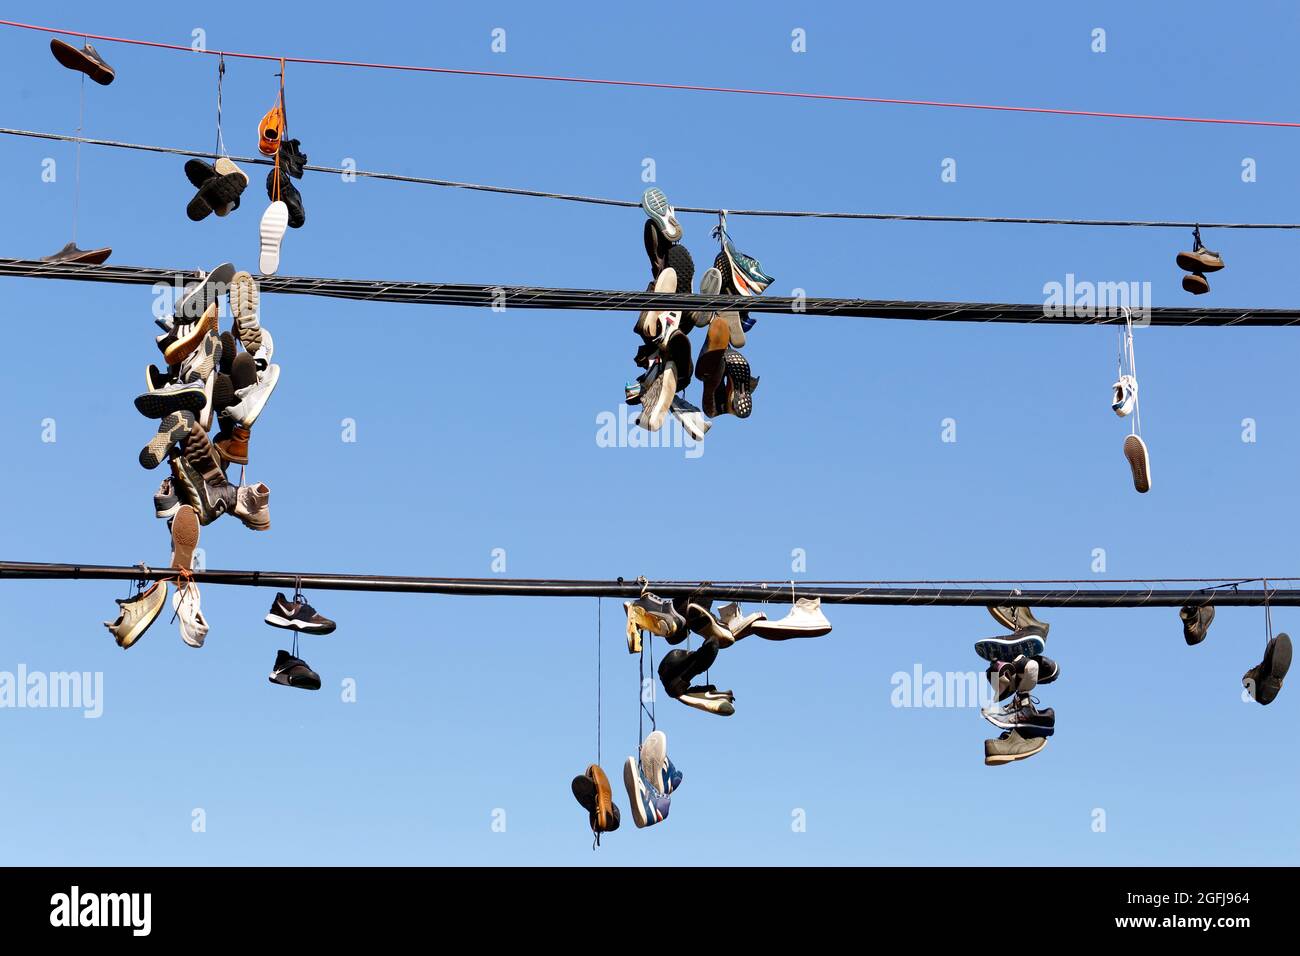 shoefiti, sneakers colgadas en el cable del teléfono contra un cielo azul soleado; sneakers atadas y puestas sobre una línea de alimentación. Foto de stock